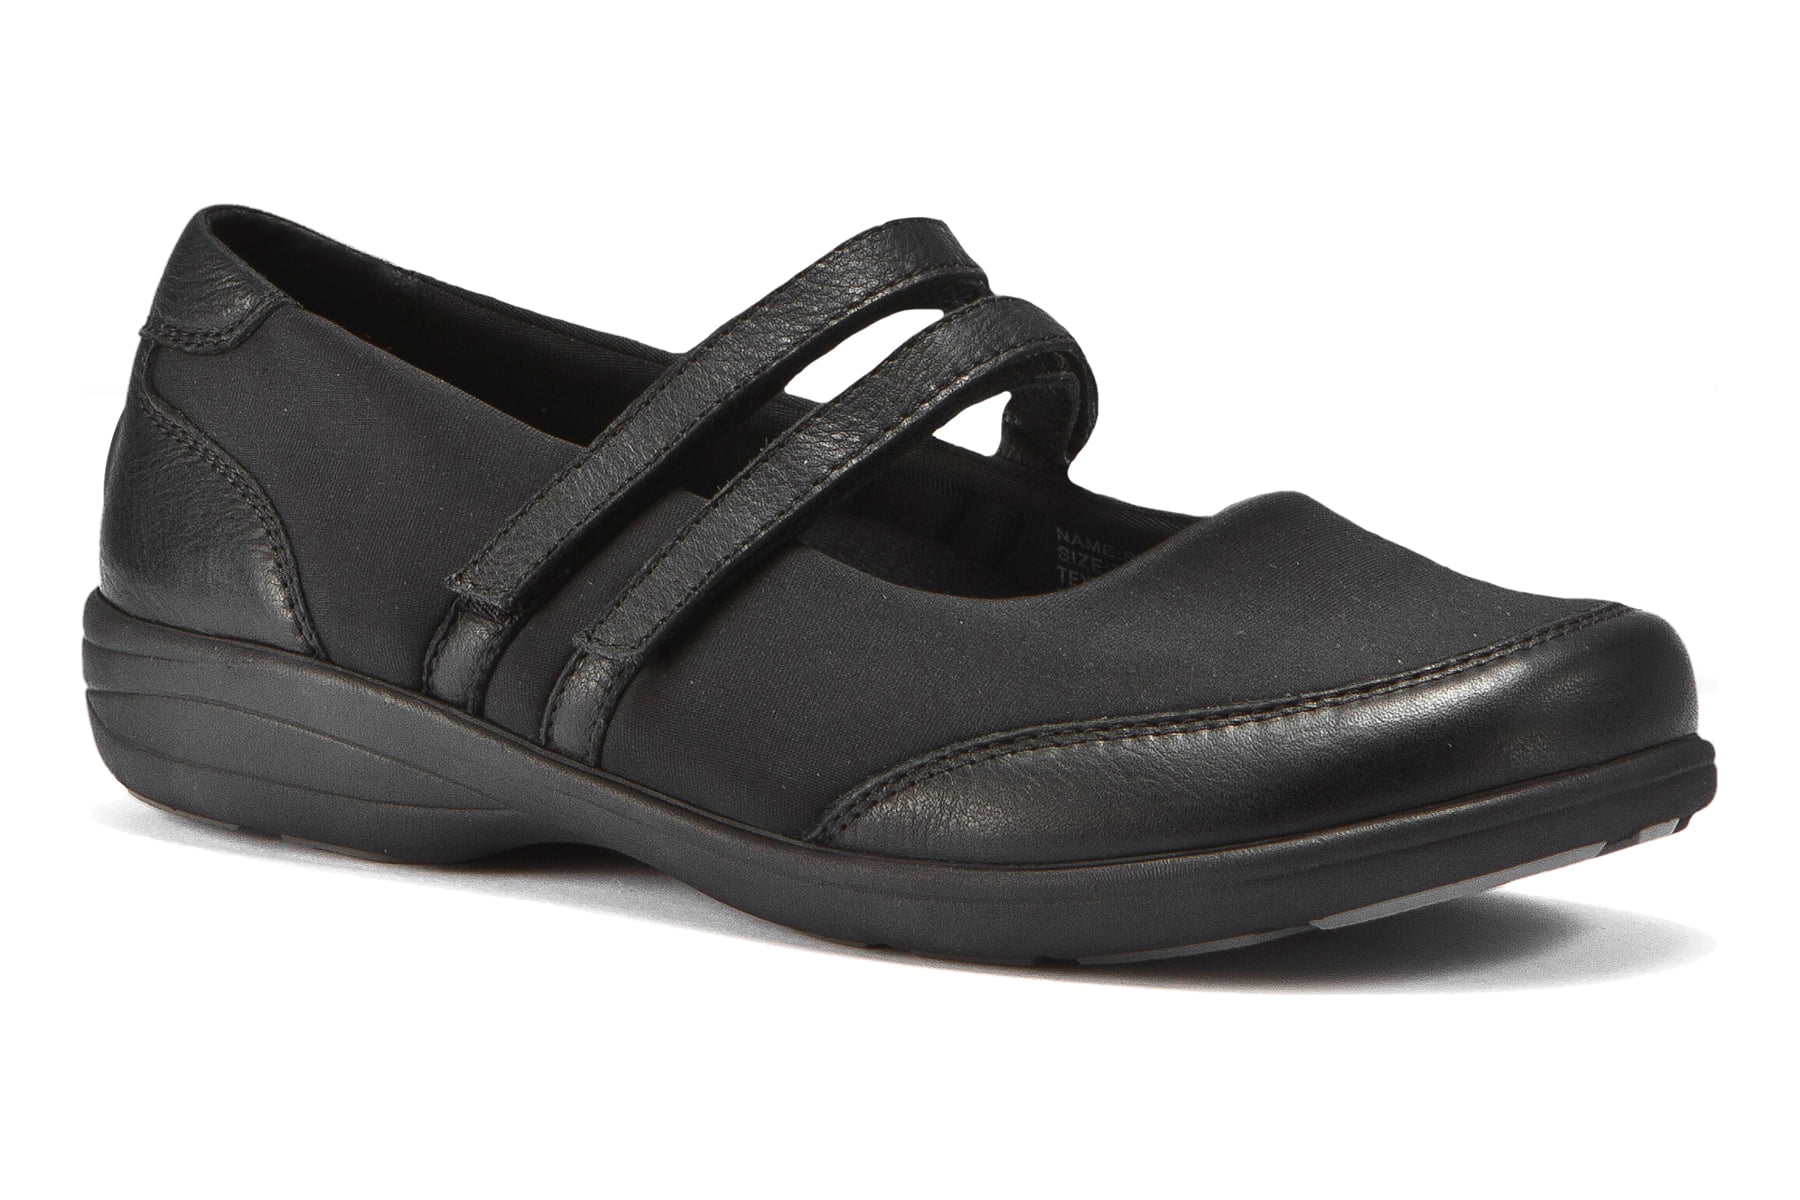 ABEO Footwear - ABEO Women's 3510 - Casual Shoes - Walmart.com ...